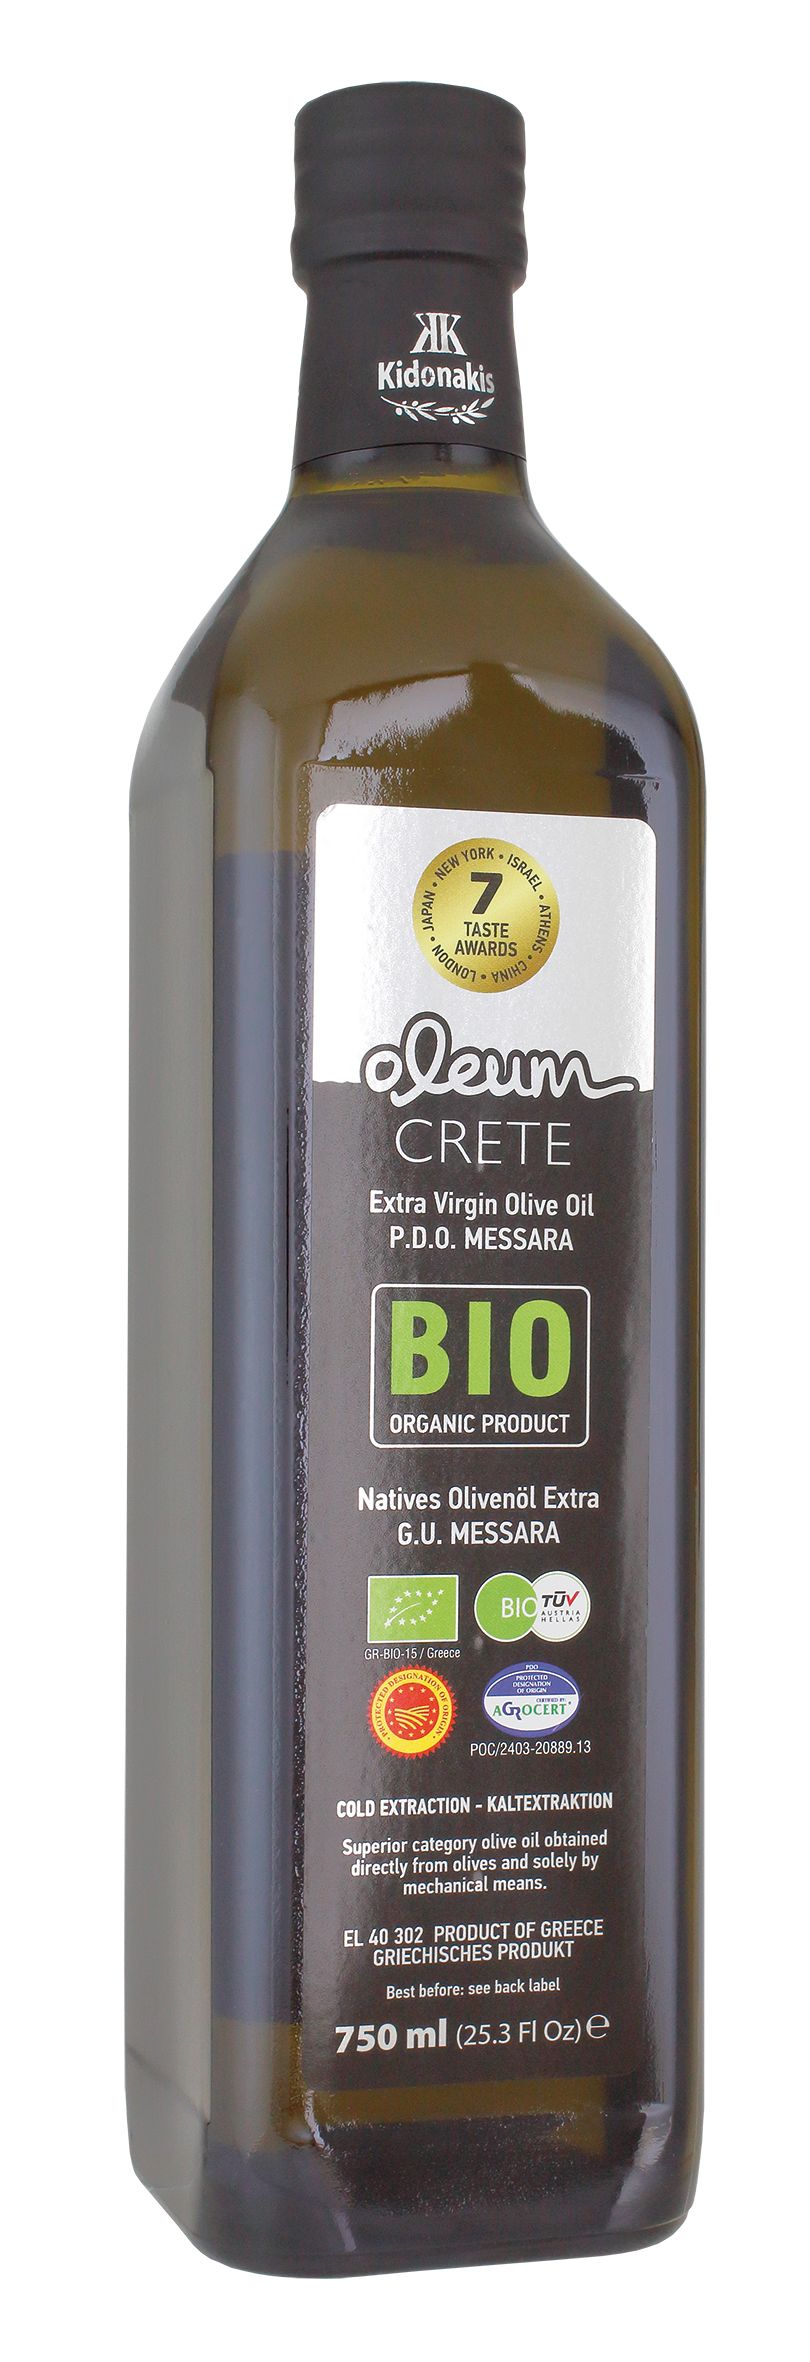 Extra Natives Koroneiki Olivenöl Bio 80 Preise P.D.O. Messara Oleum Crete 100ml - 1L Glas